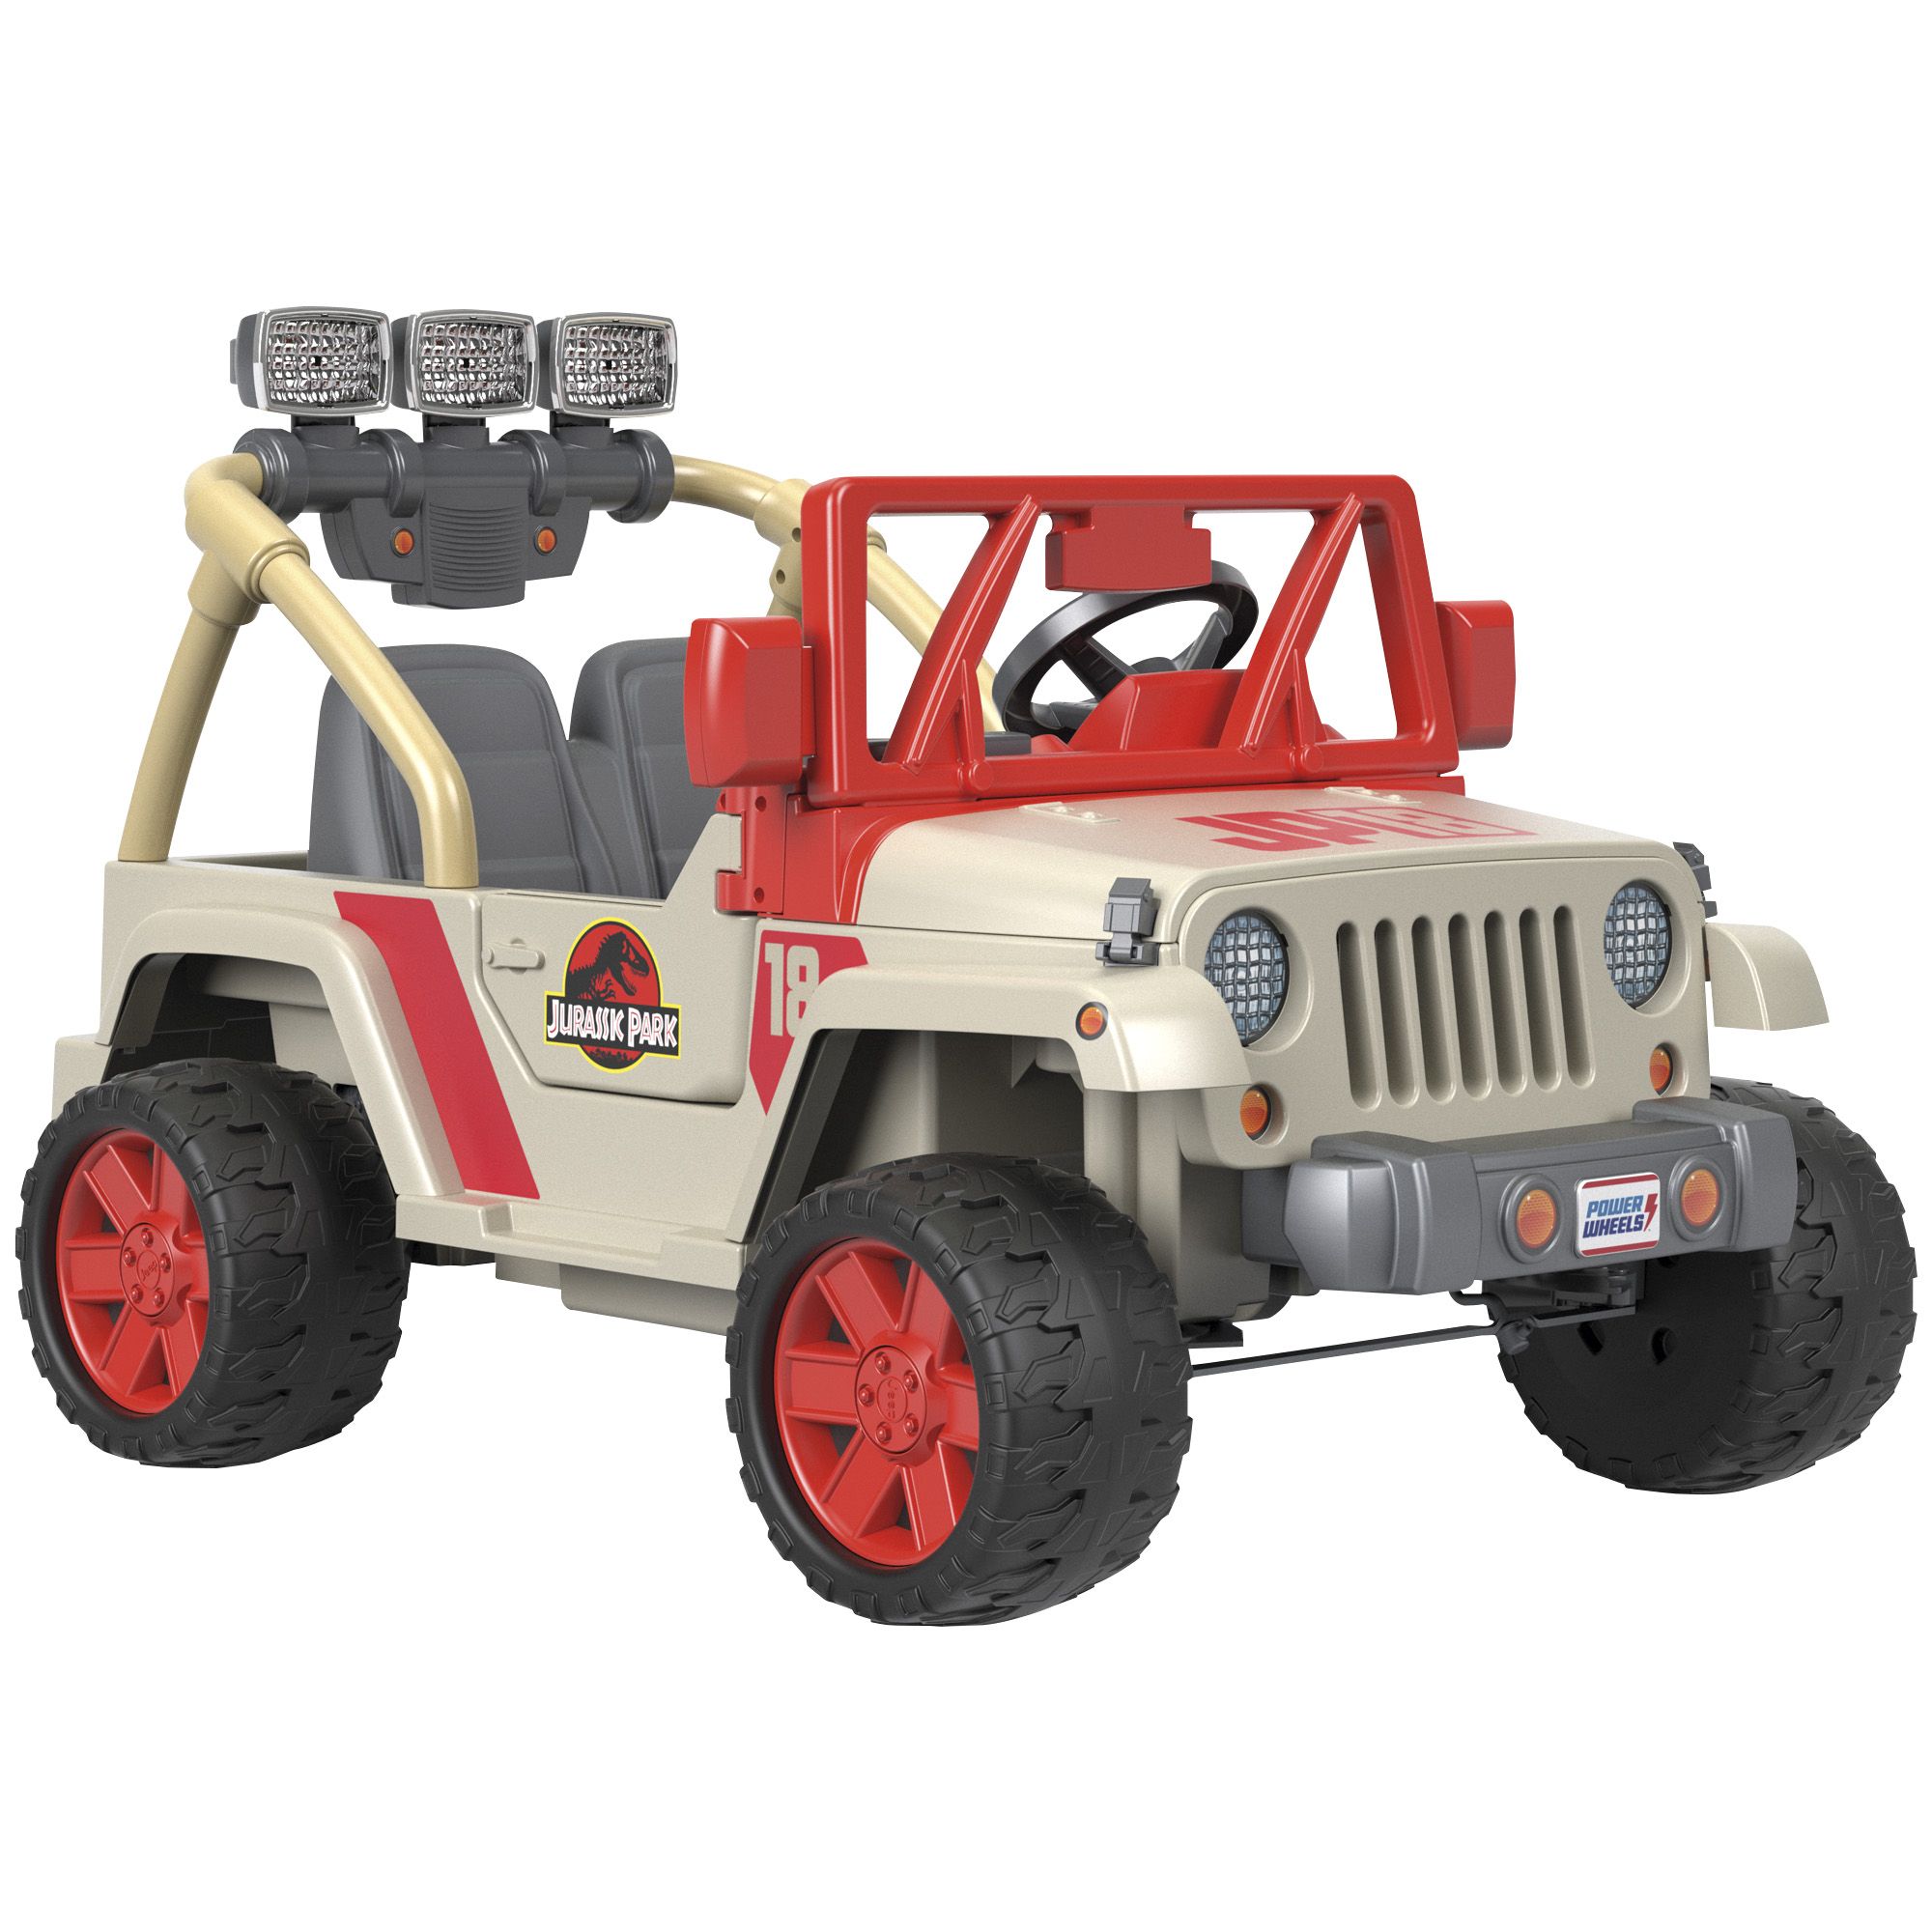 Fingerhut - Fisher-Price Power Wheels Jurassic Park Jeep Wrangler 12V  Ride-On